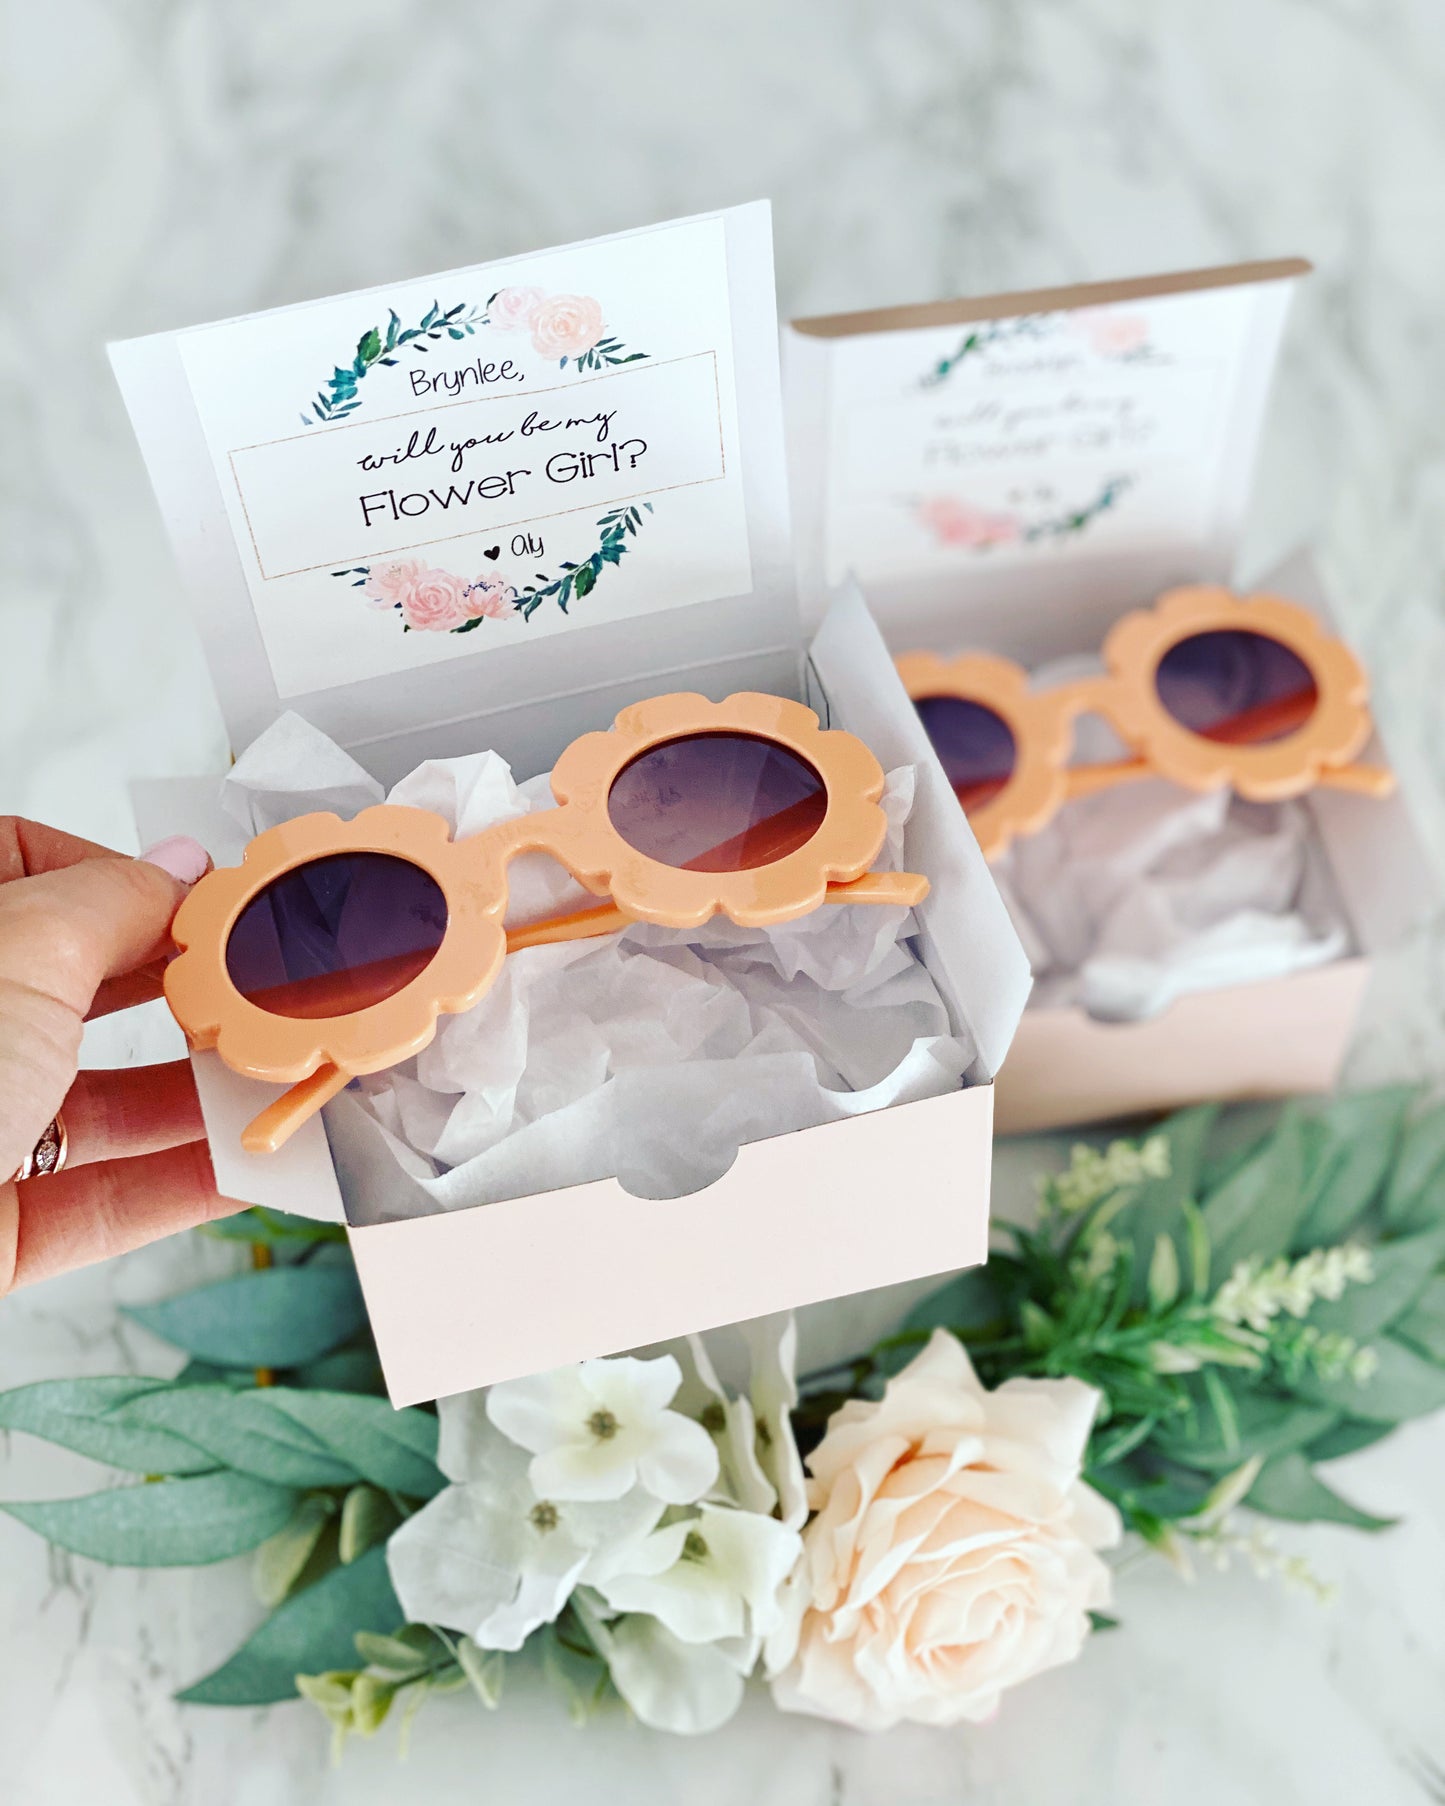 Flower Girl Flower Sunglasses